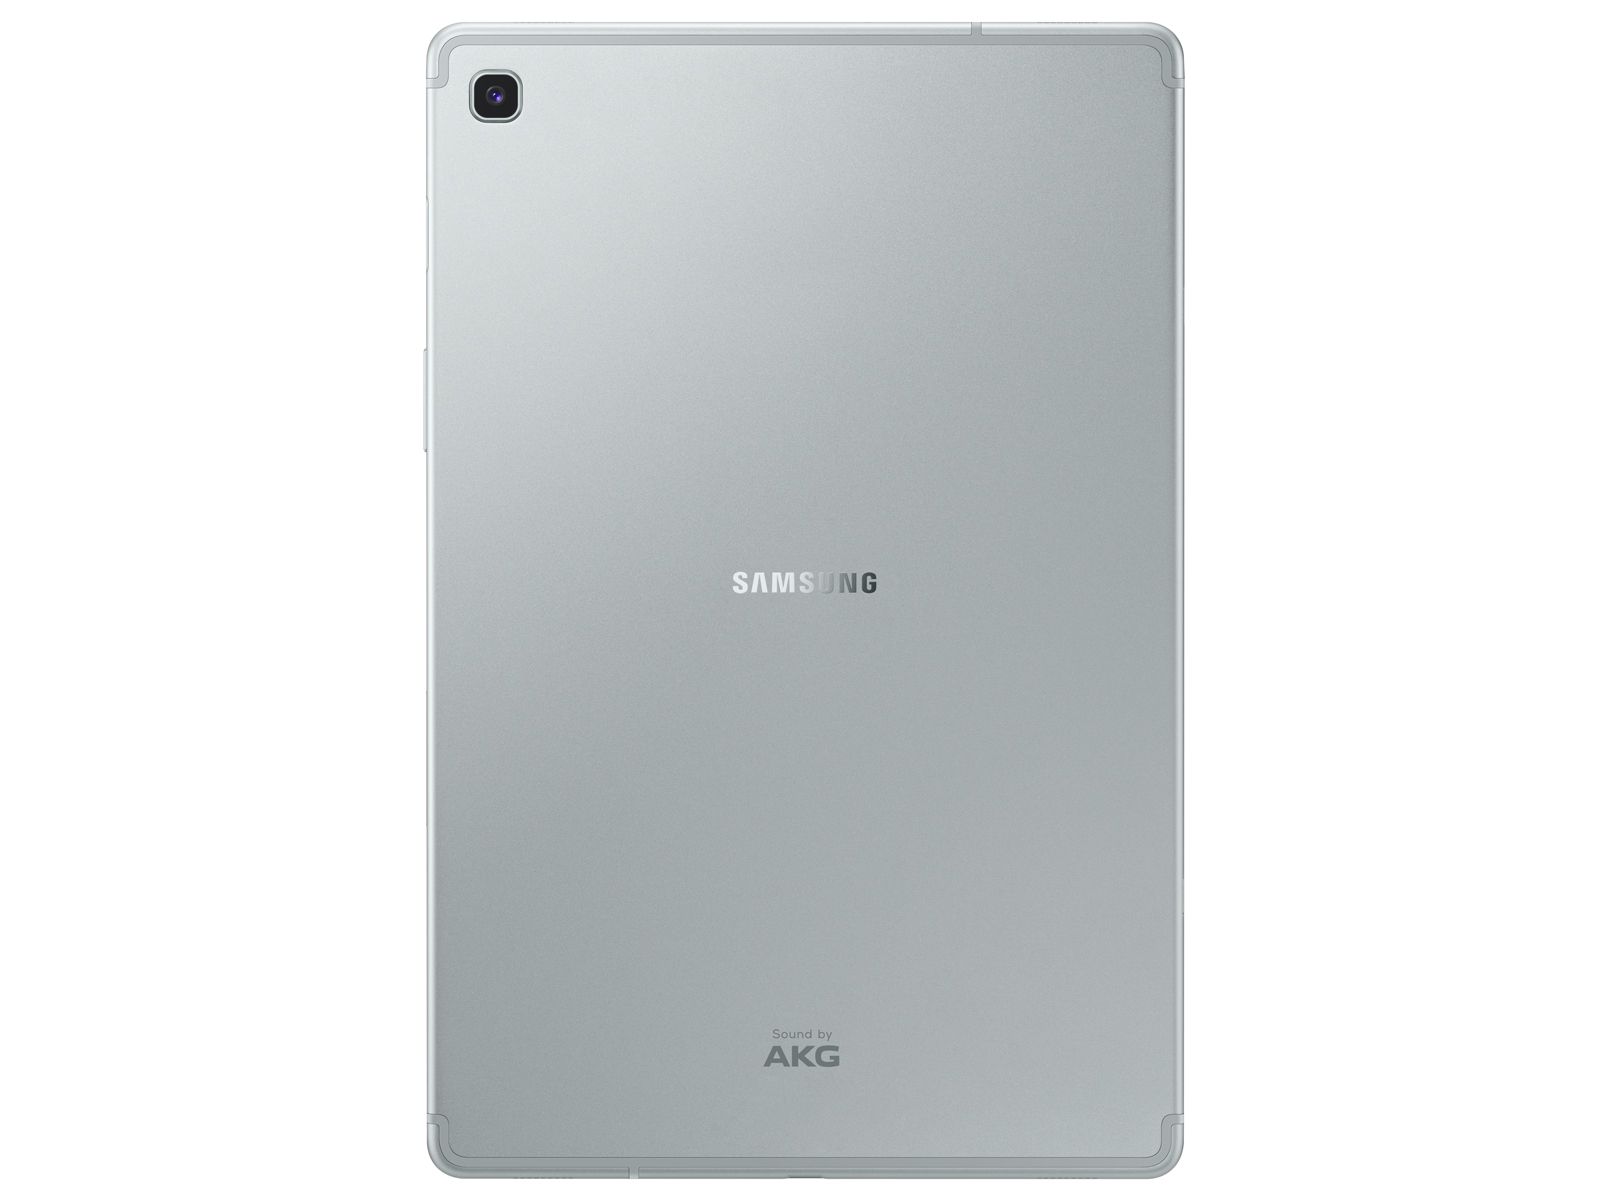 Galaxy Tab S5e 10.5, 64GB, Silver (Wi-Fi) Tablets - SM-T720NZSAXAR